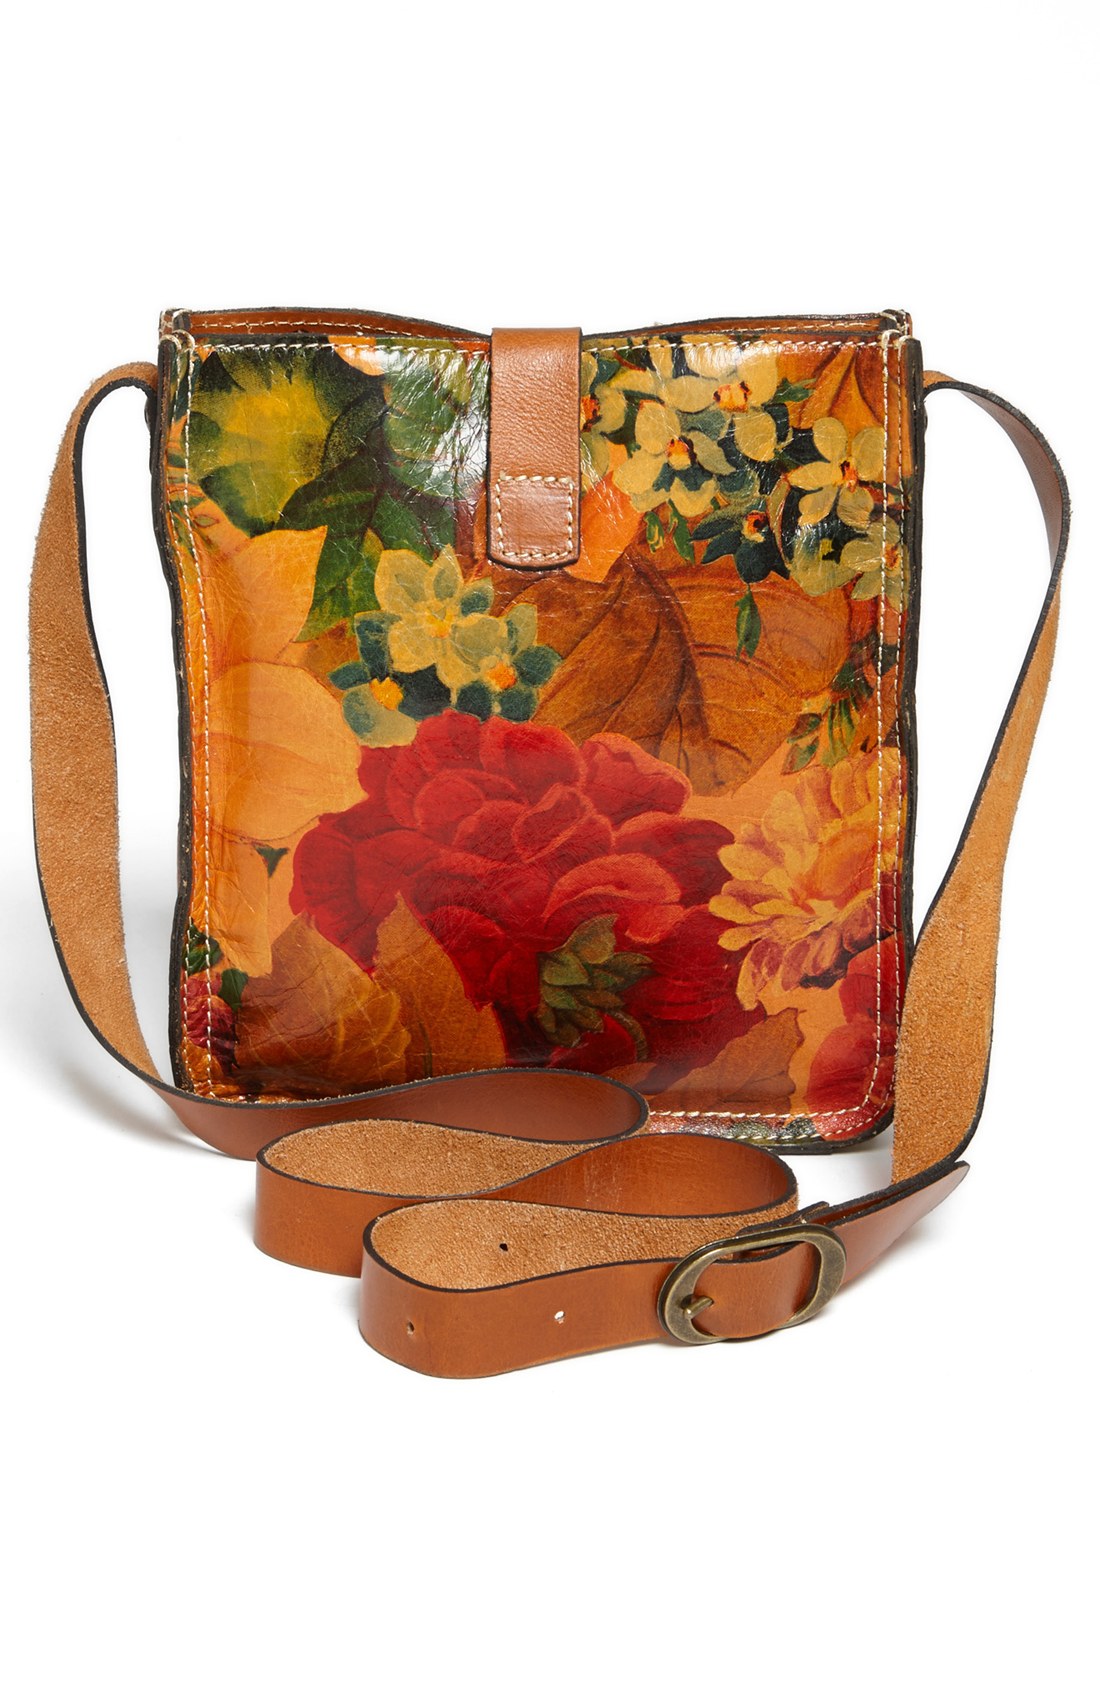 Patricia nash Venezia Crossbody Bag in Floral (Heritage Multi Print) | Lyst